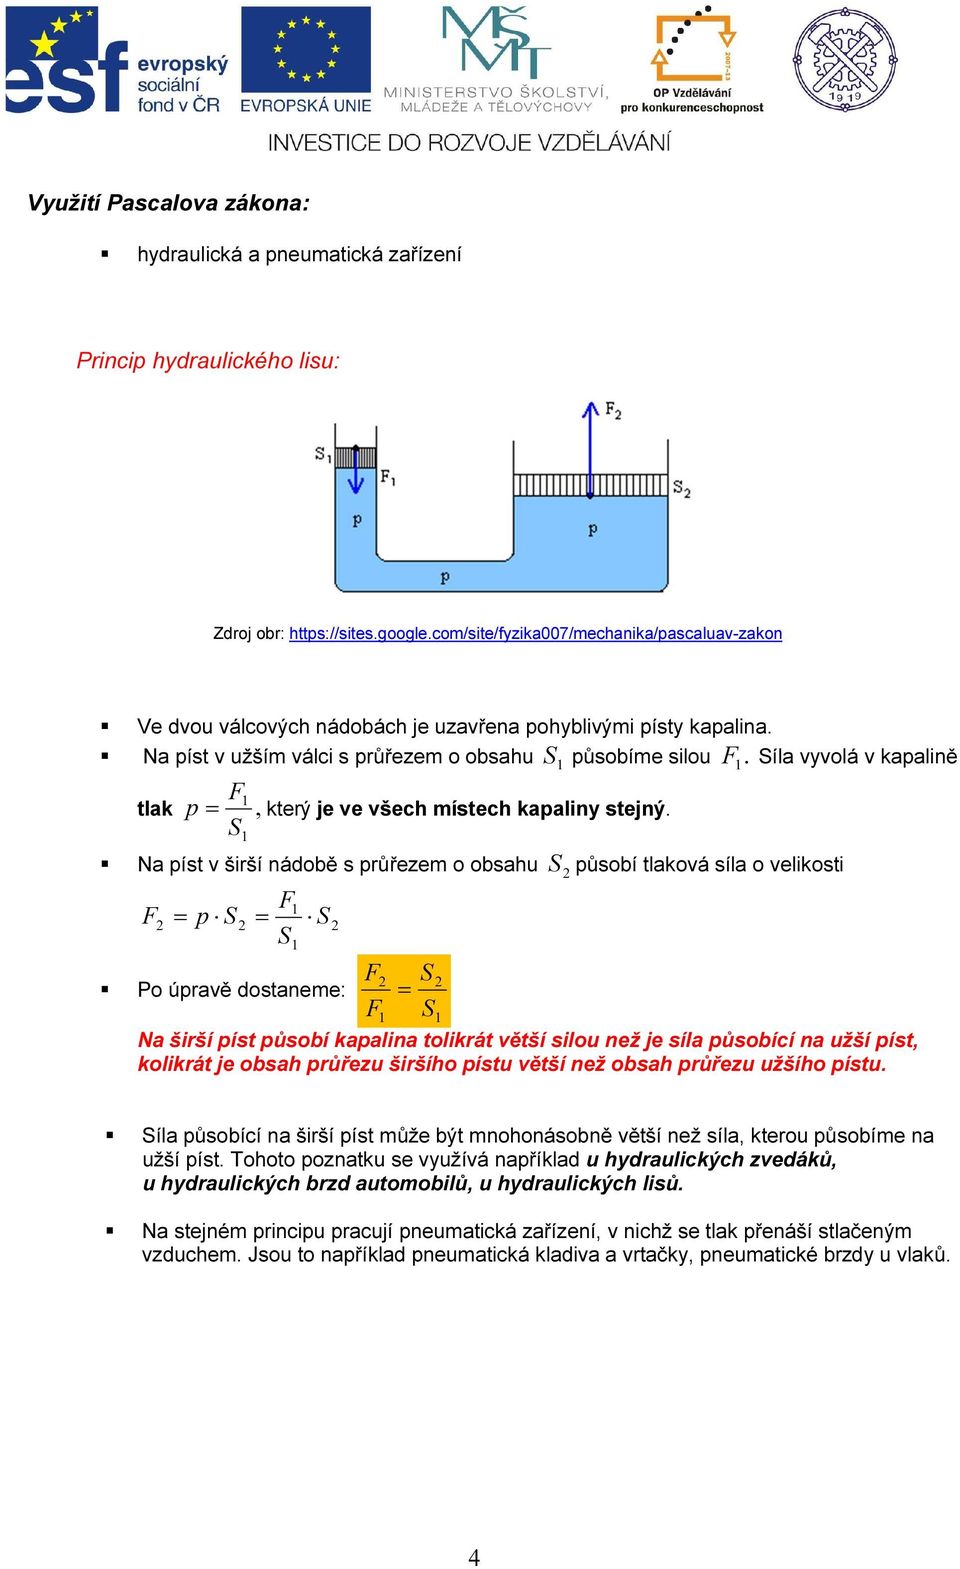 Síla vyvolá v kapalině F p = S 1 tlak, který je ve všech místech kapaliny stejný.